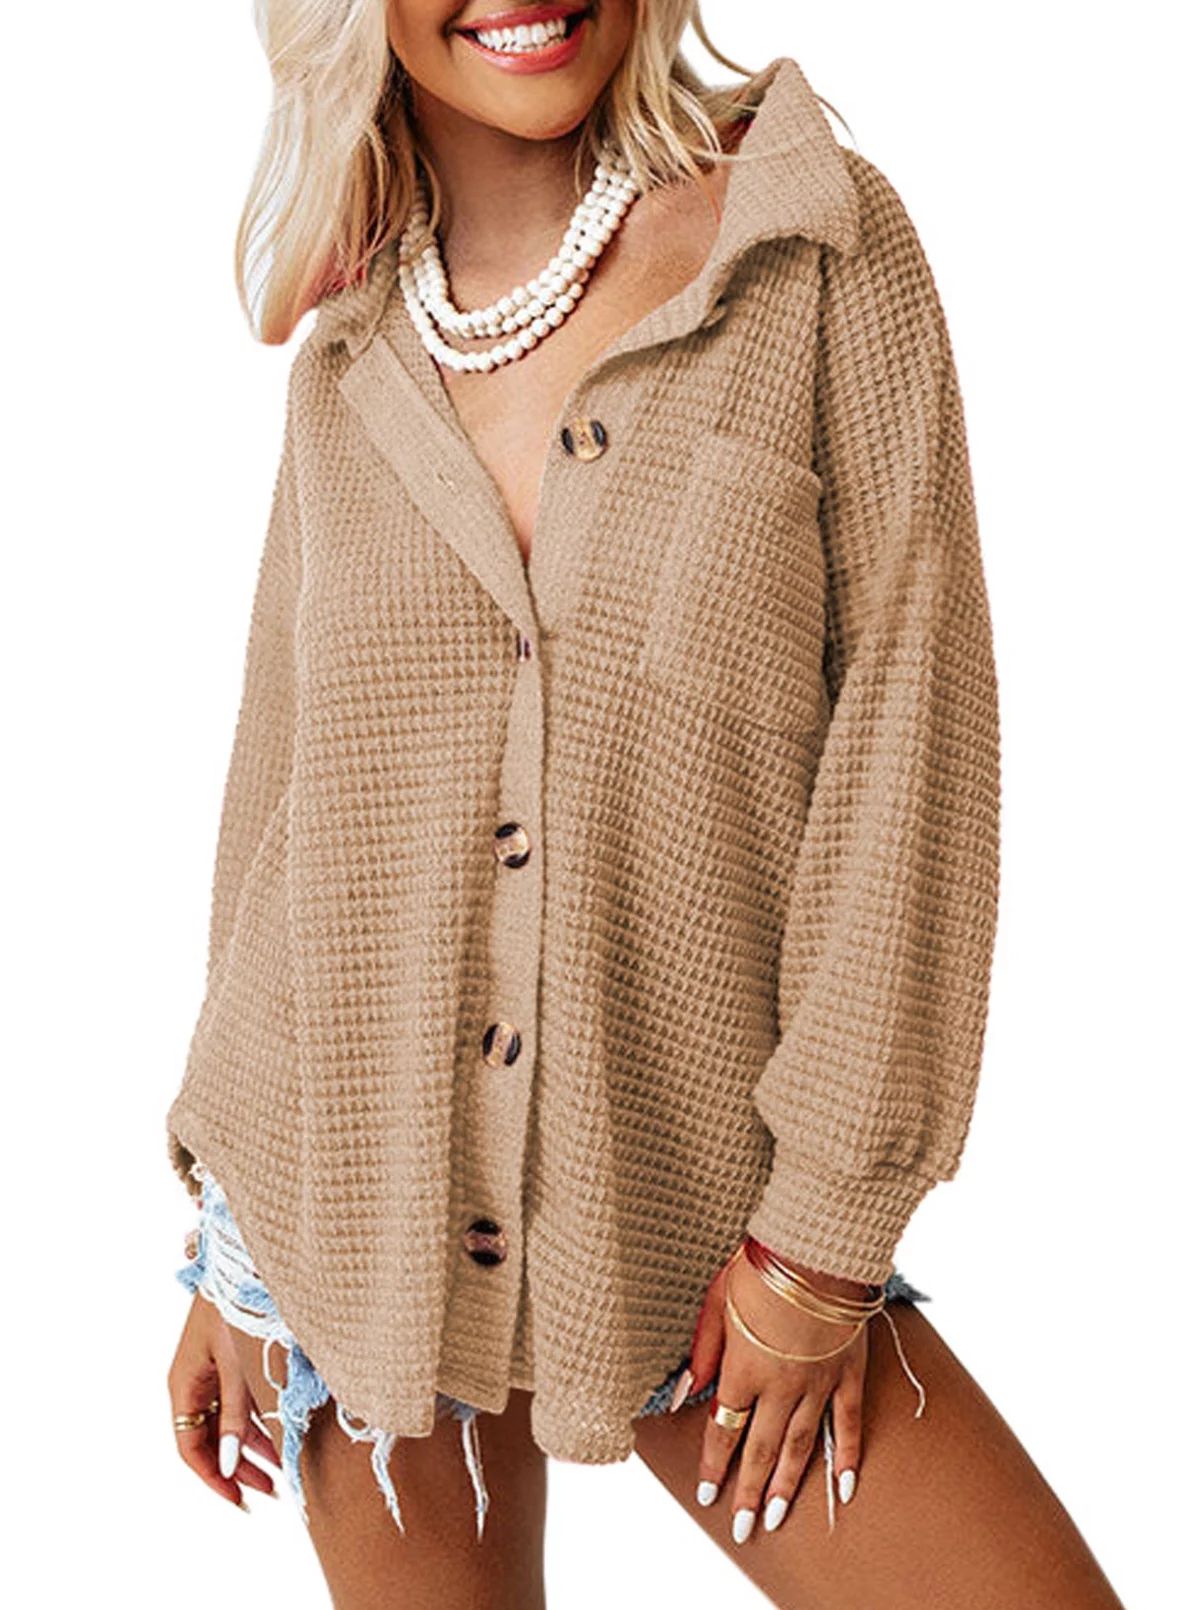 SHEWIN Women's Jackets Oversized Waffle Knit Shackets Boyfriend Casual Long Sleeve Blouses Tops L... | Walmart (US)